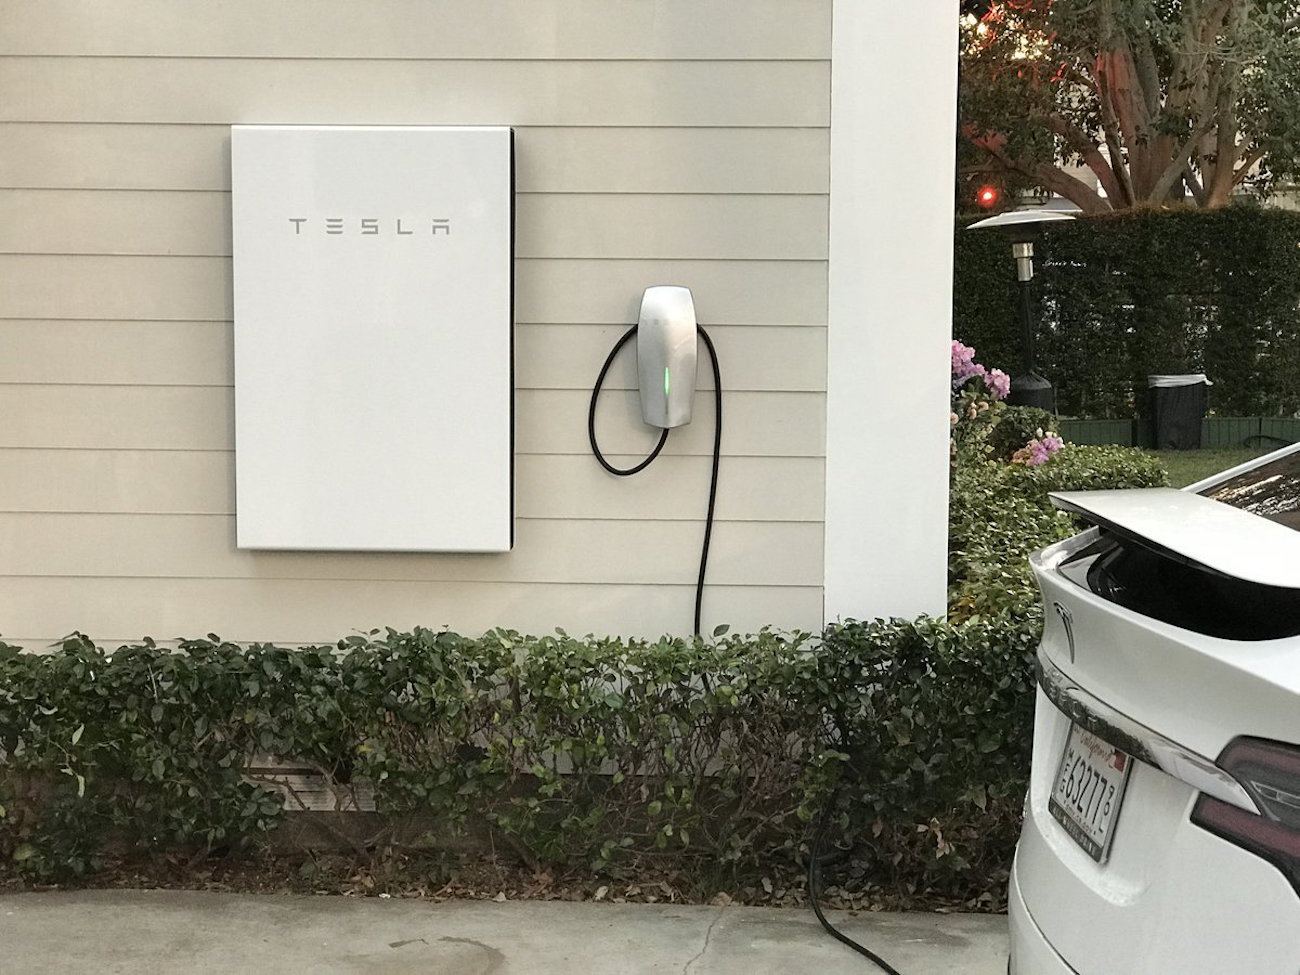 Empresa “Tesla” apresentou telhado solar ousado e nova versão de sua bateria para casas